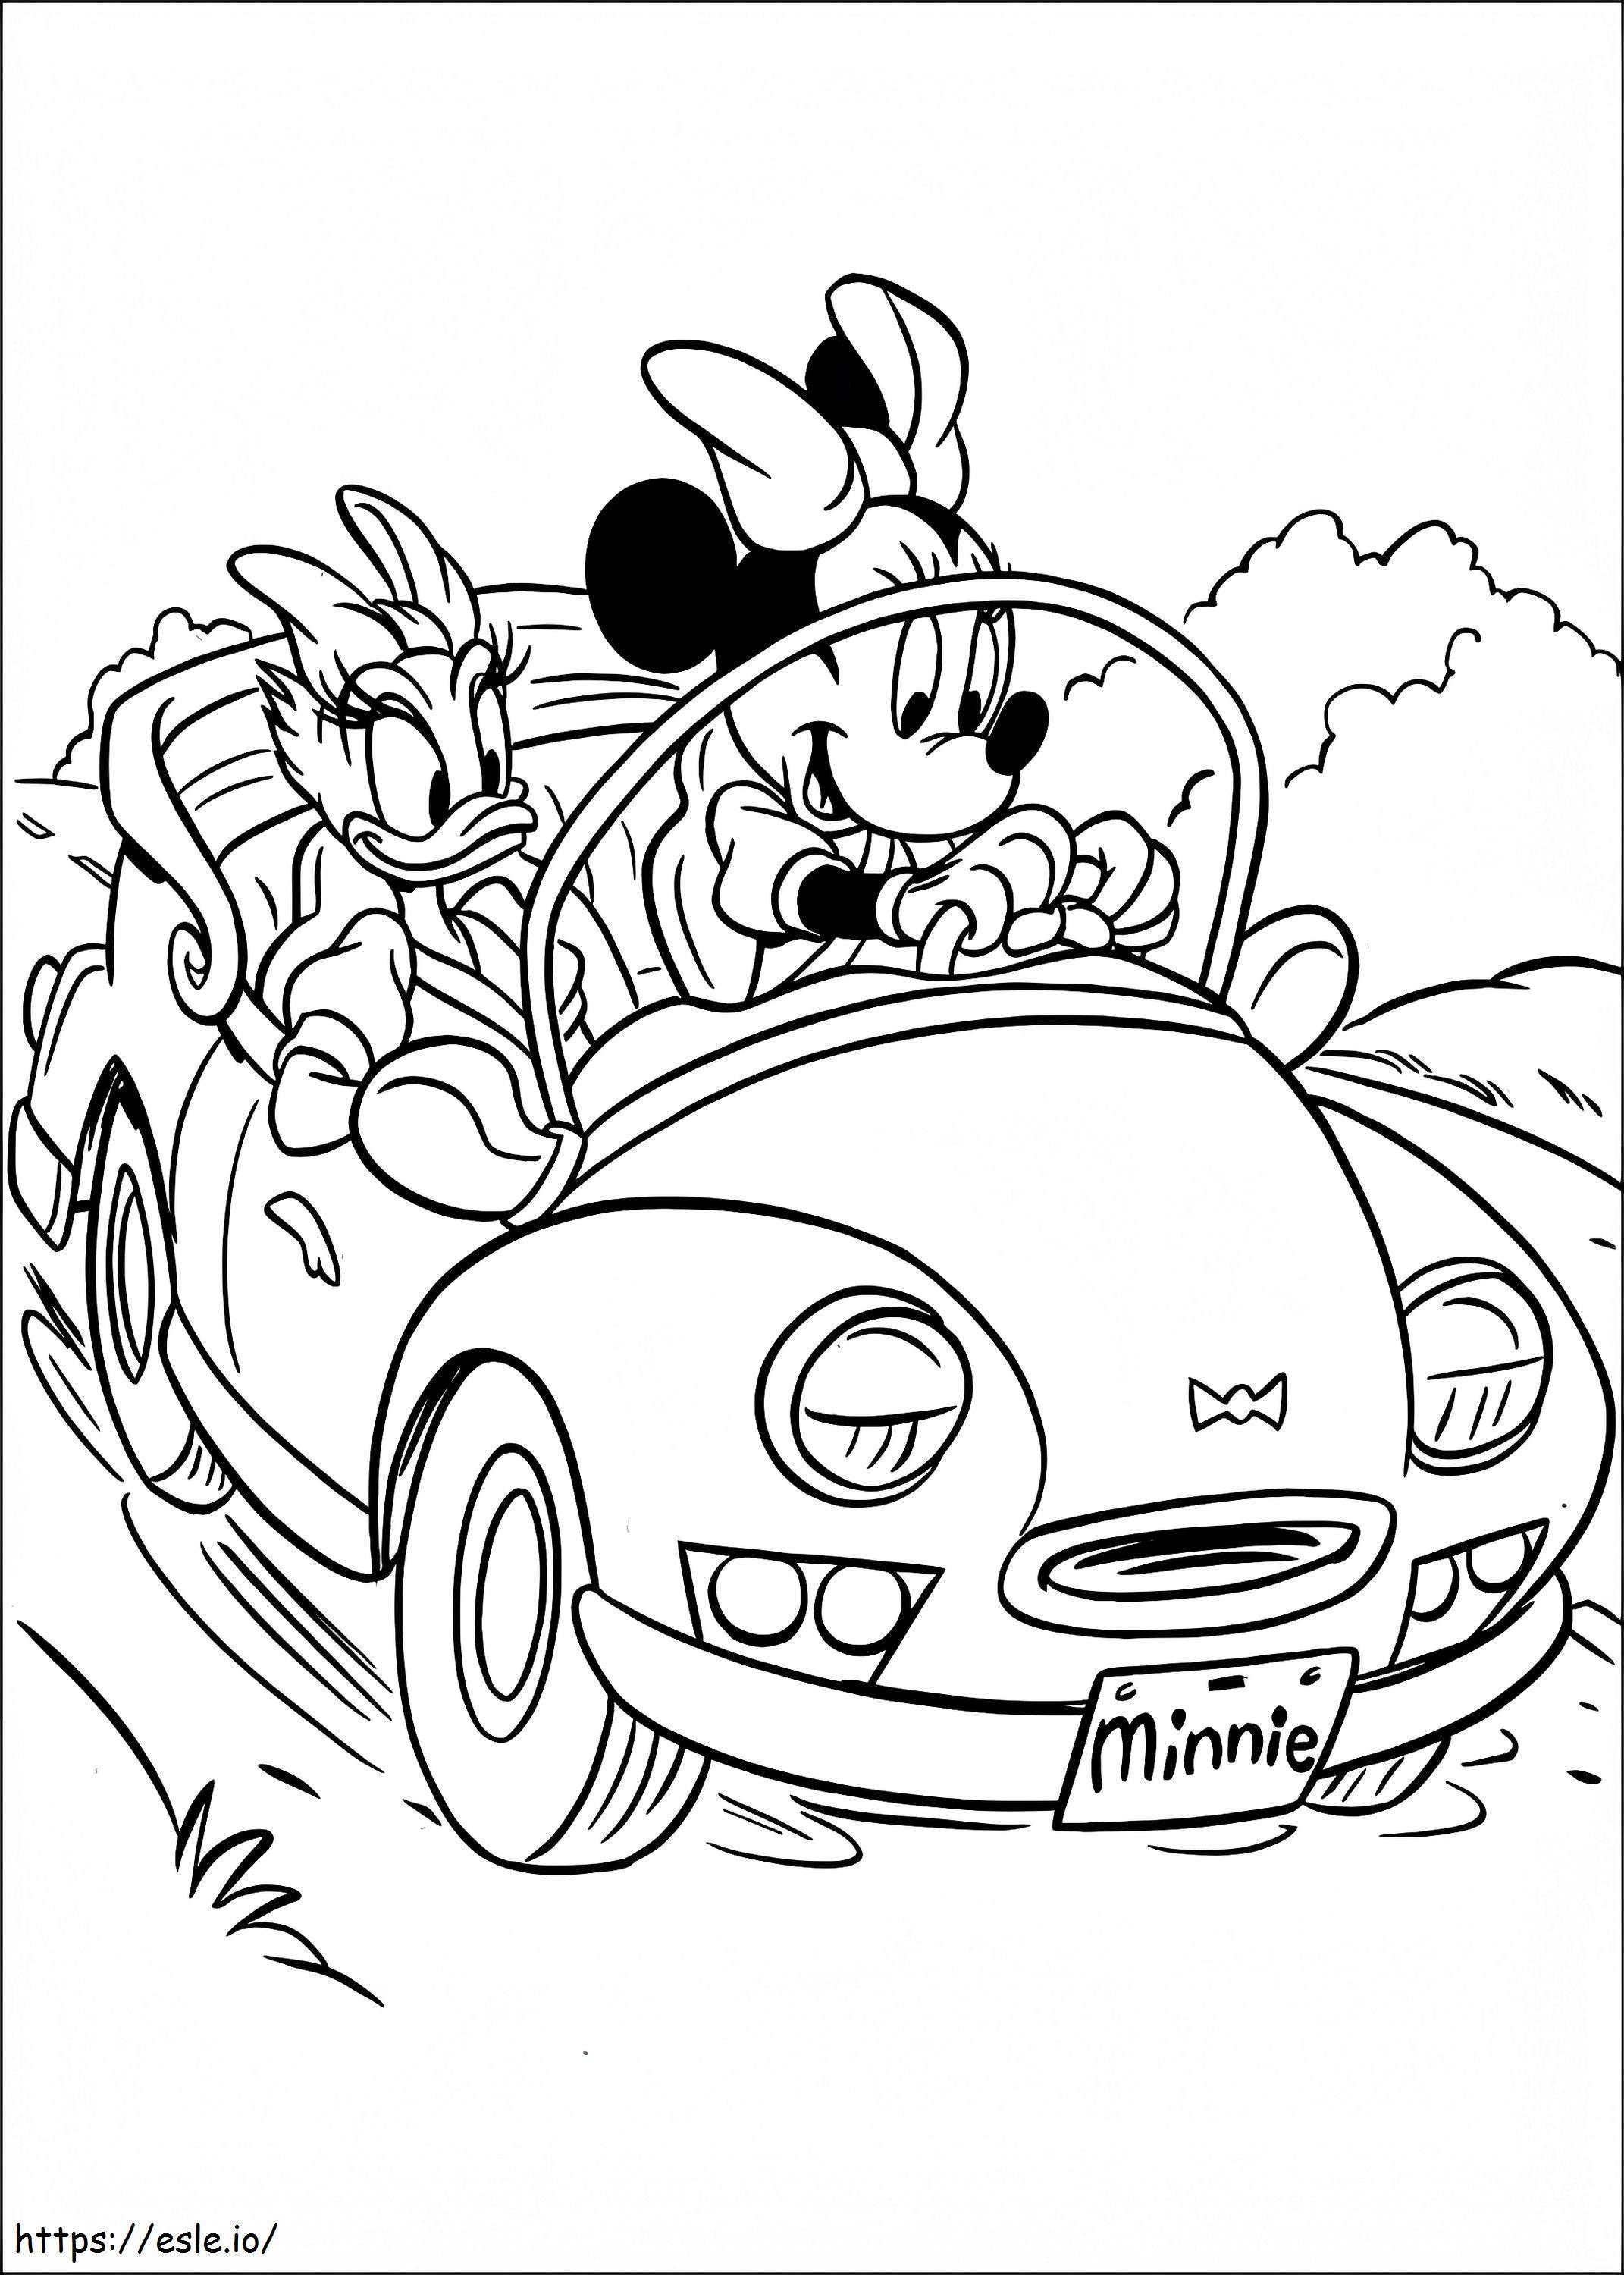 Minnie Mouse e Paperina alla guida di un'auto da colorare